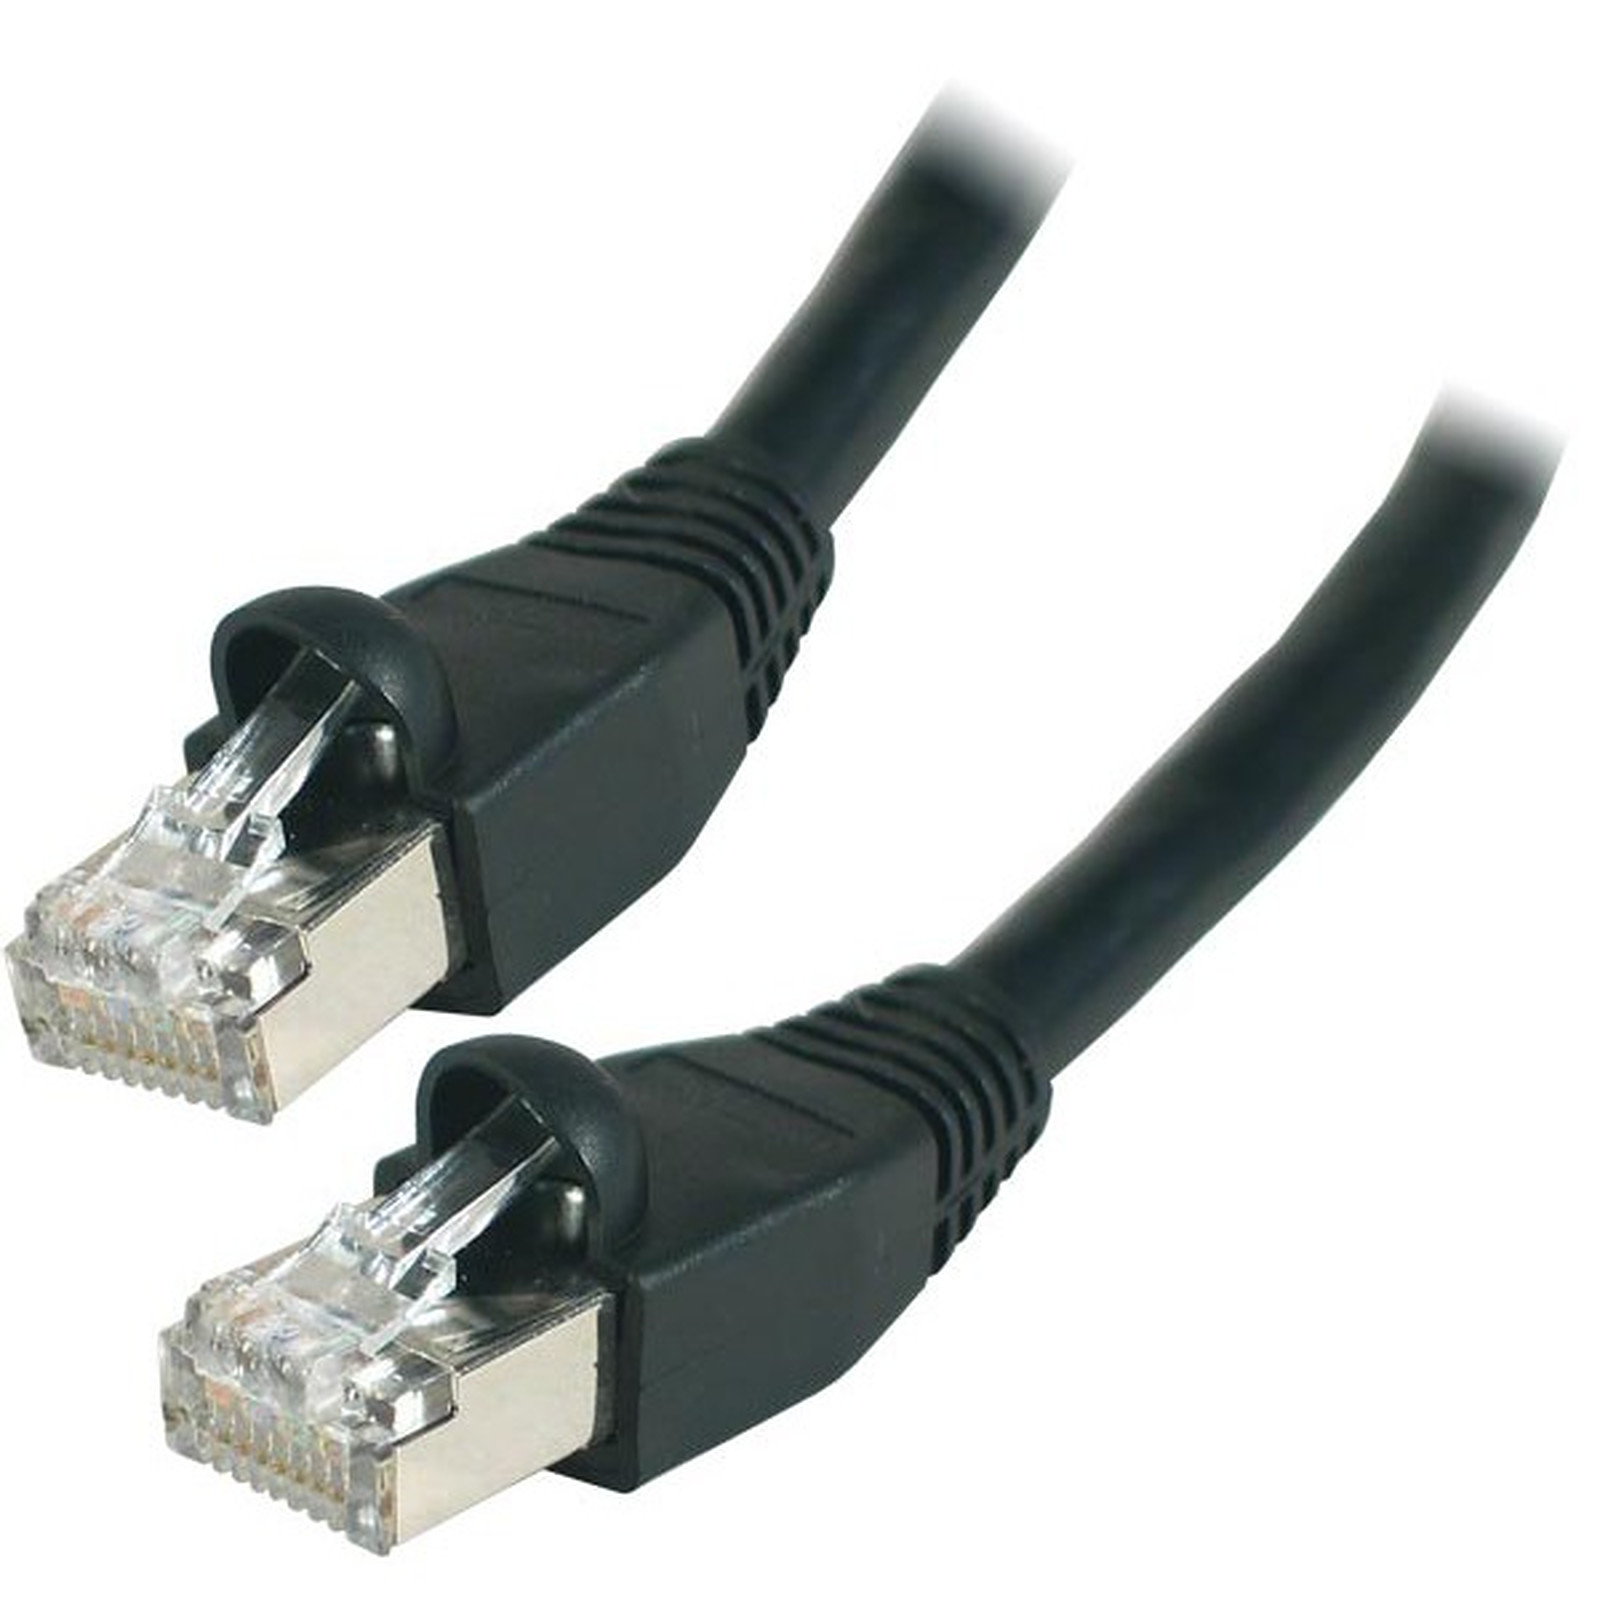 Cable RJ45 categorie 6 S/FTP 15 m (Noir) - Cable RJ45 Generique